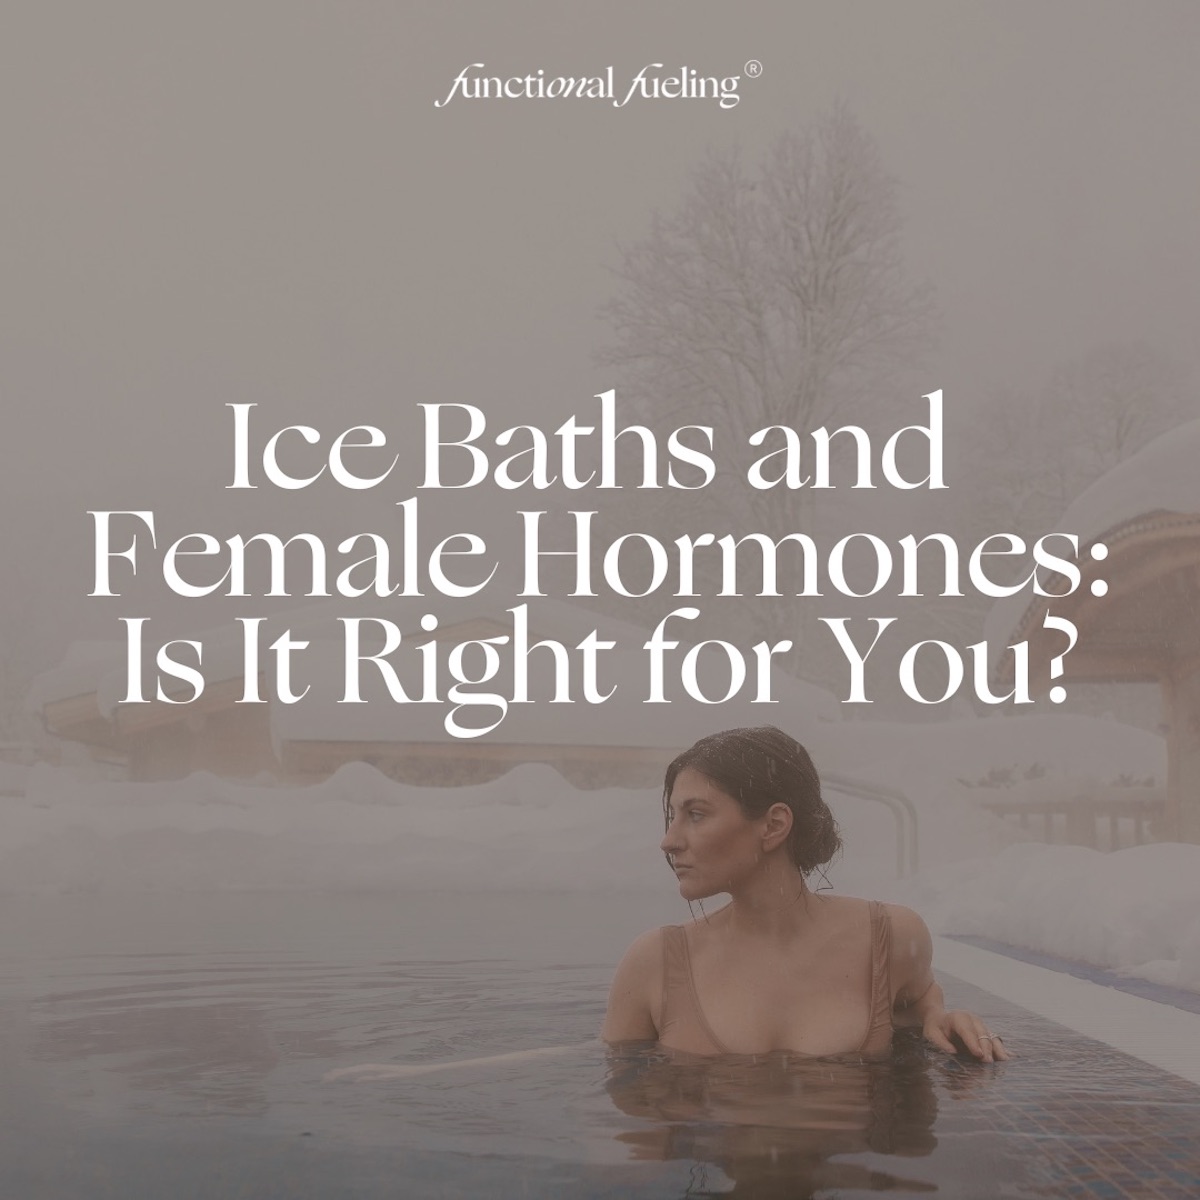 Ice Baths and Female Hormones